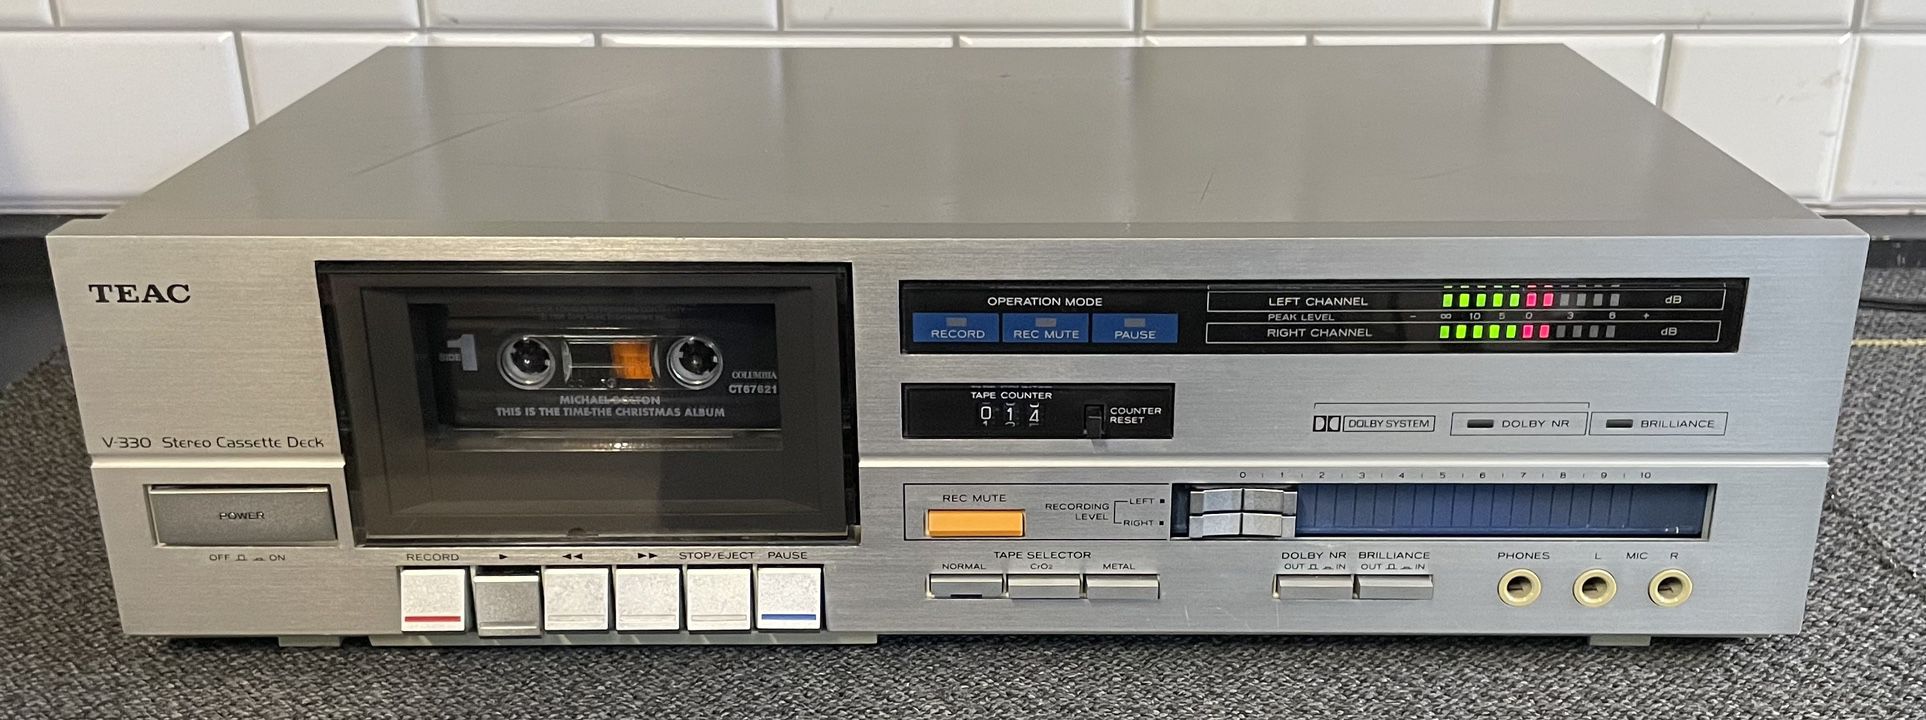 Teac V-330 Stereo Cassette Deck 